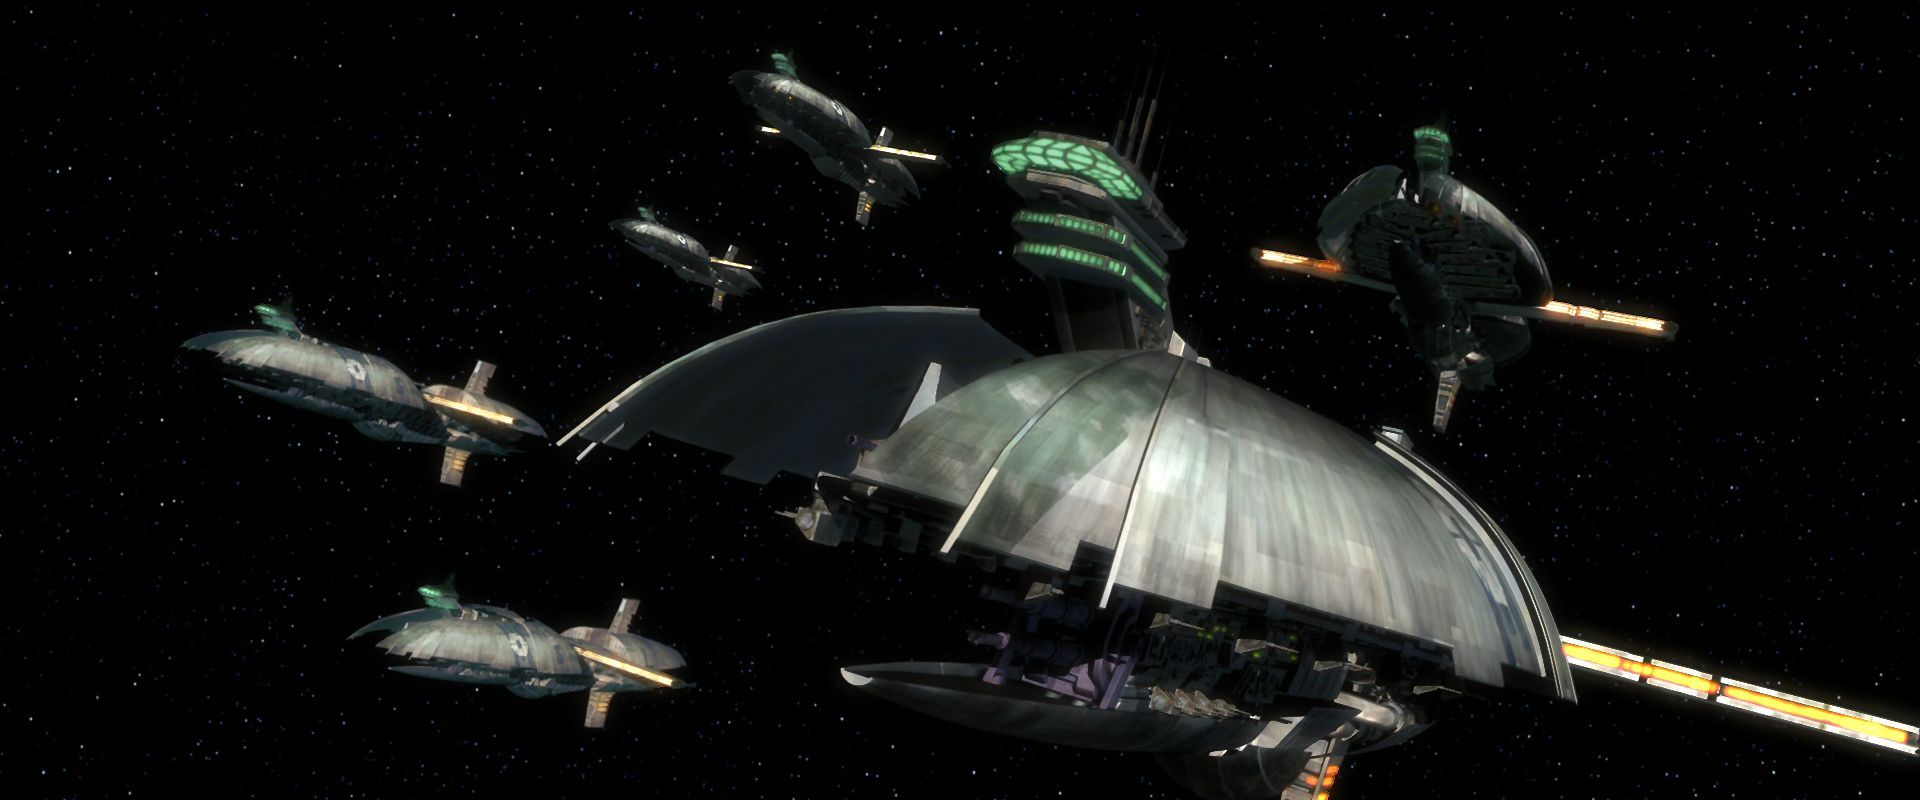 The Separatist war machine. Star wars wallpaper, Star wars ships, Star wars clone wars